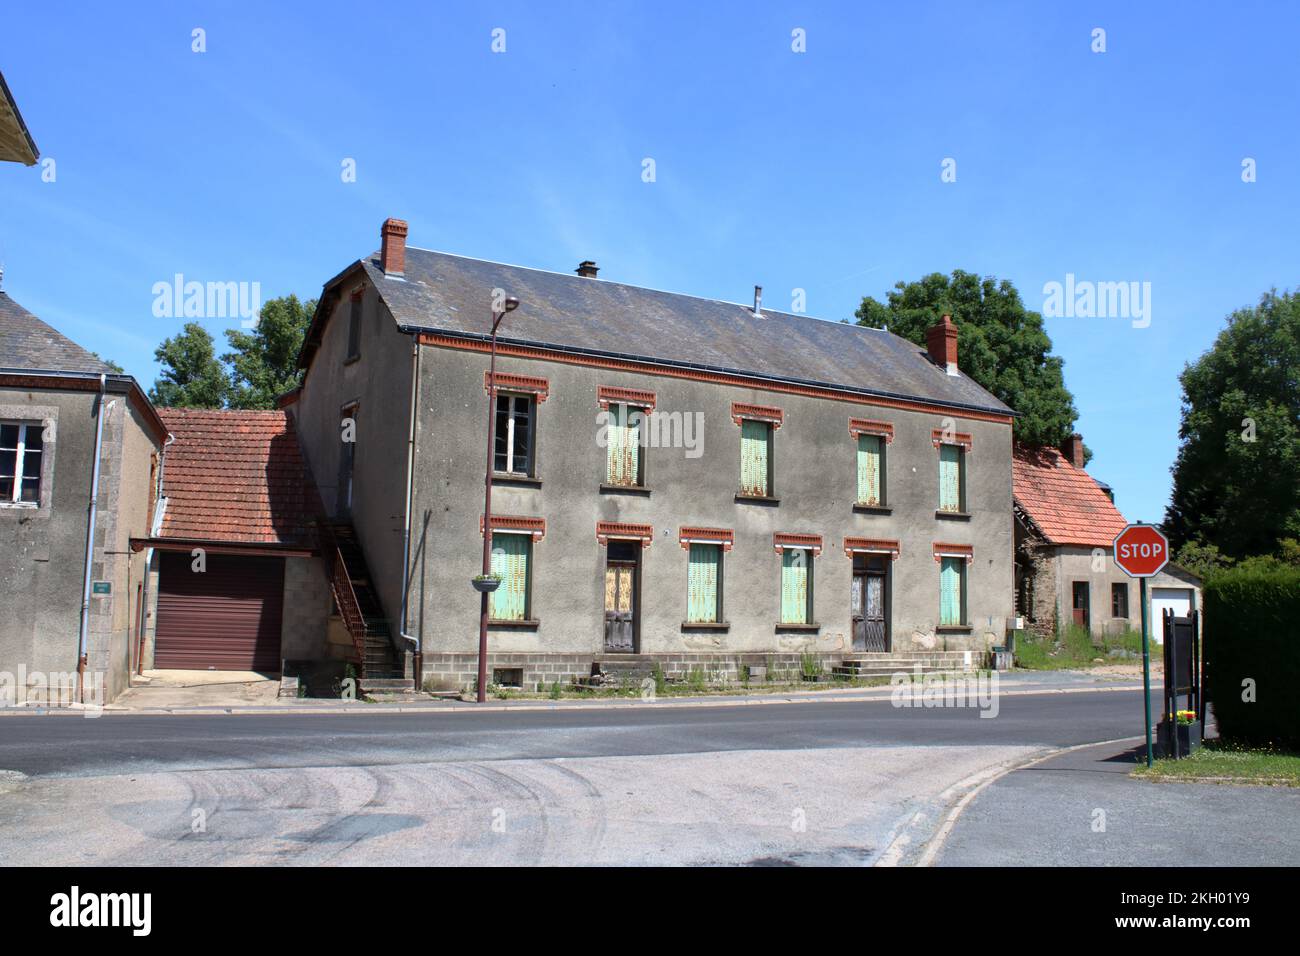 Vue sur le logement traditionnel français ici situé dans le village rural français de Saint-Marien situé dans la région de la Creuse en France centrale. Banque D'Images